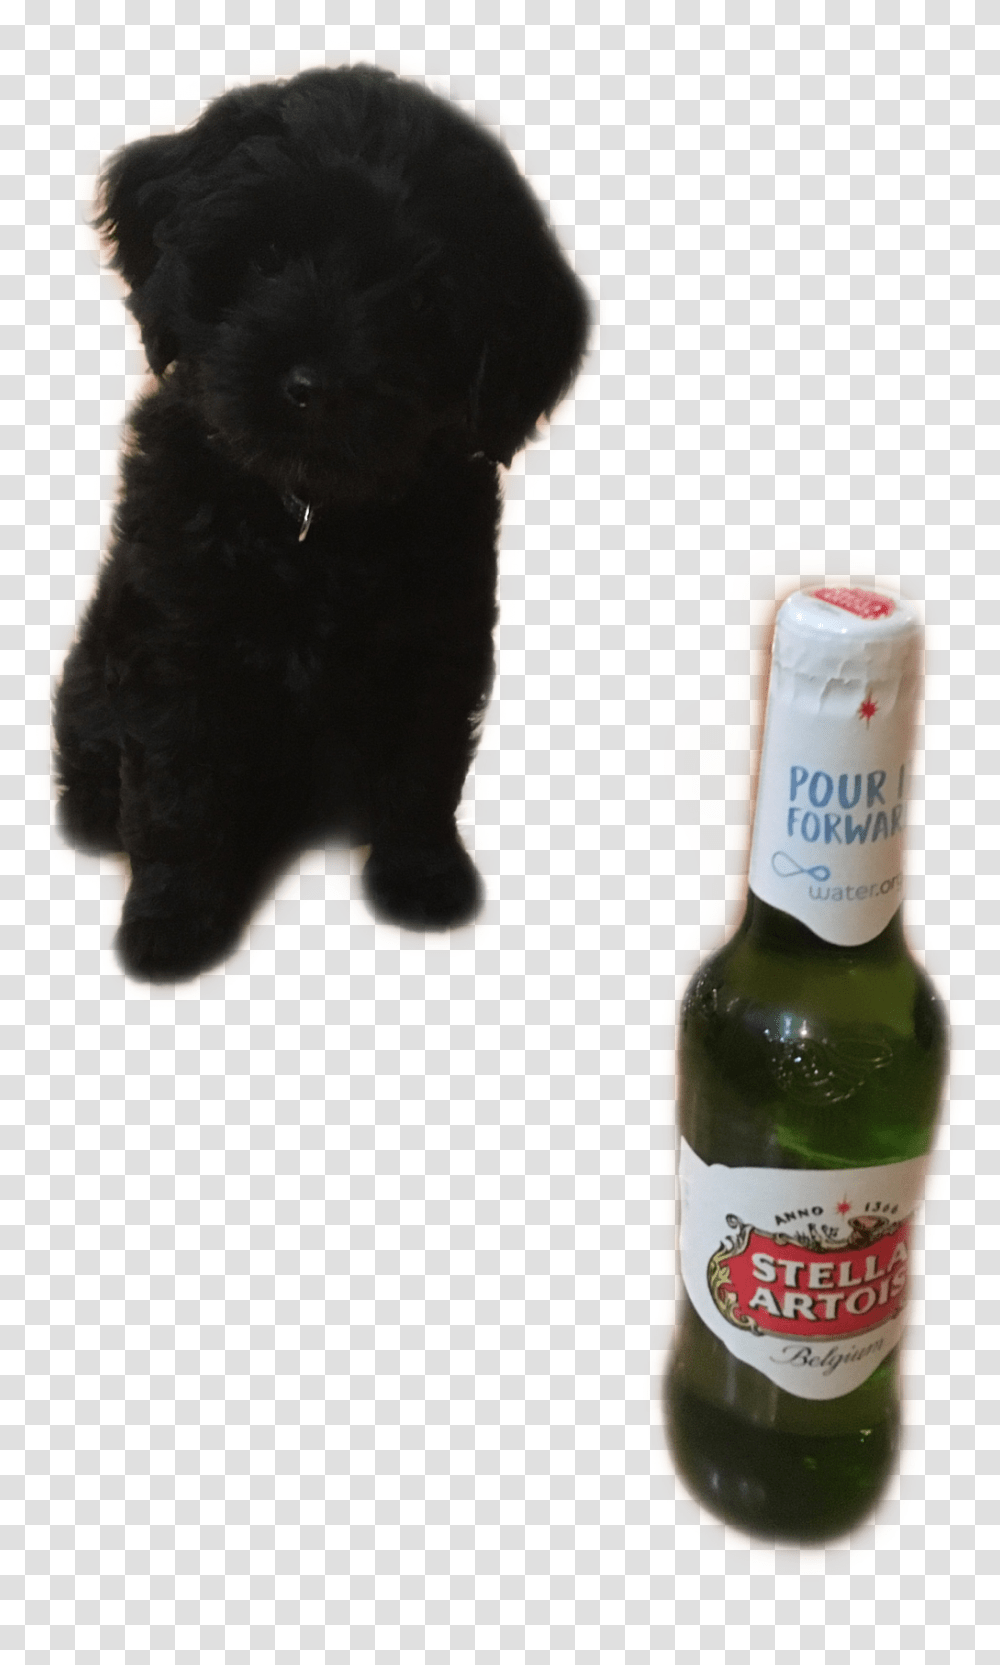 Stella Beer Beer Bottle, Alcohol, Beverage, Drink, Dog Transparent Png